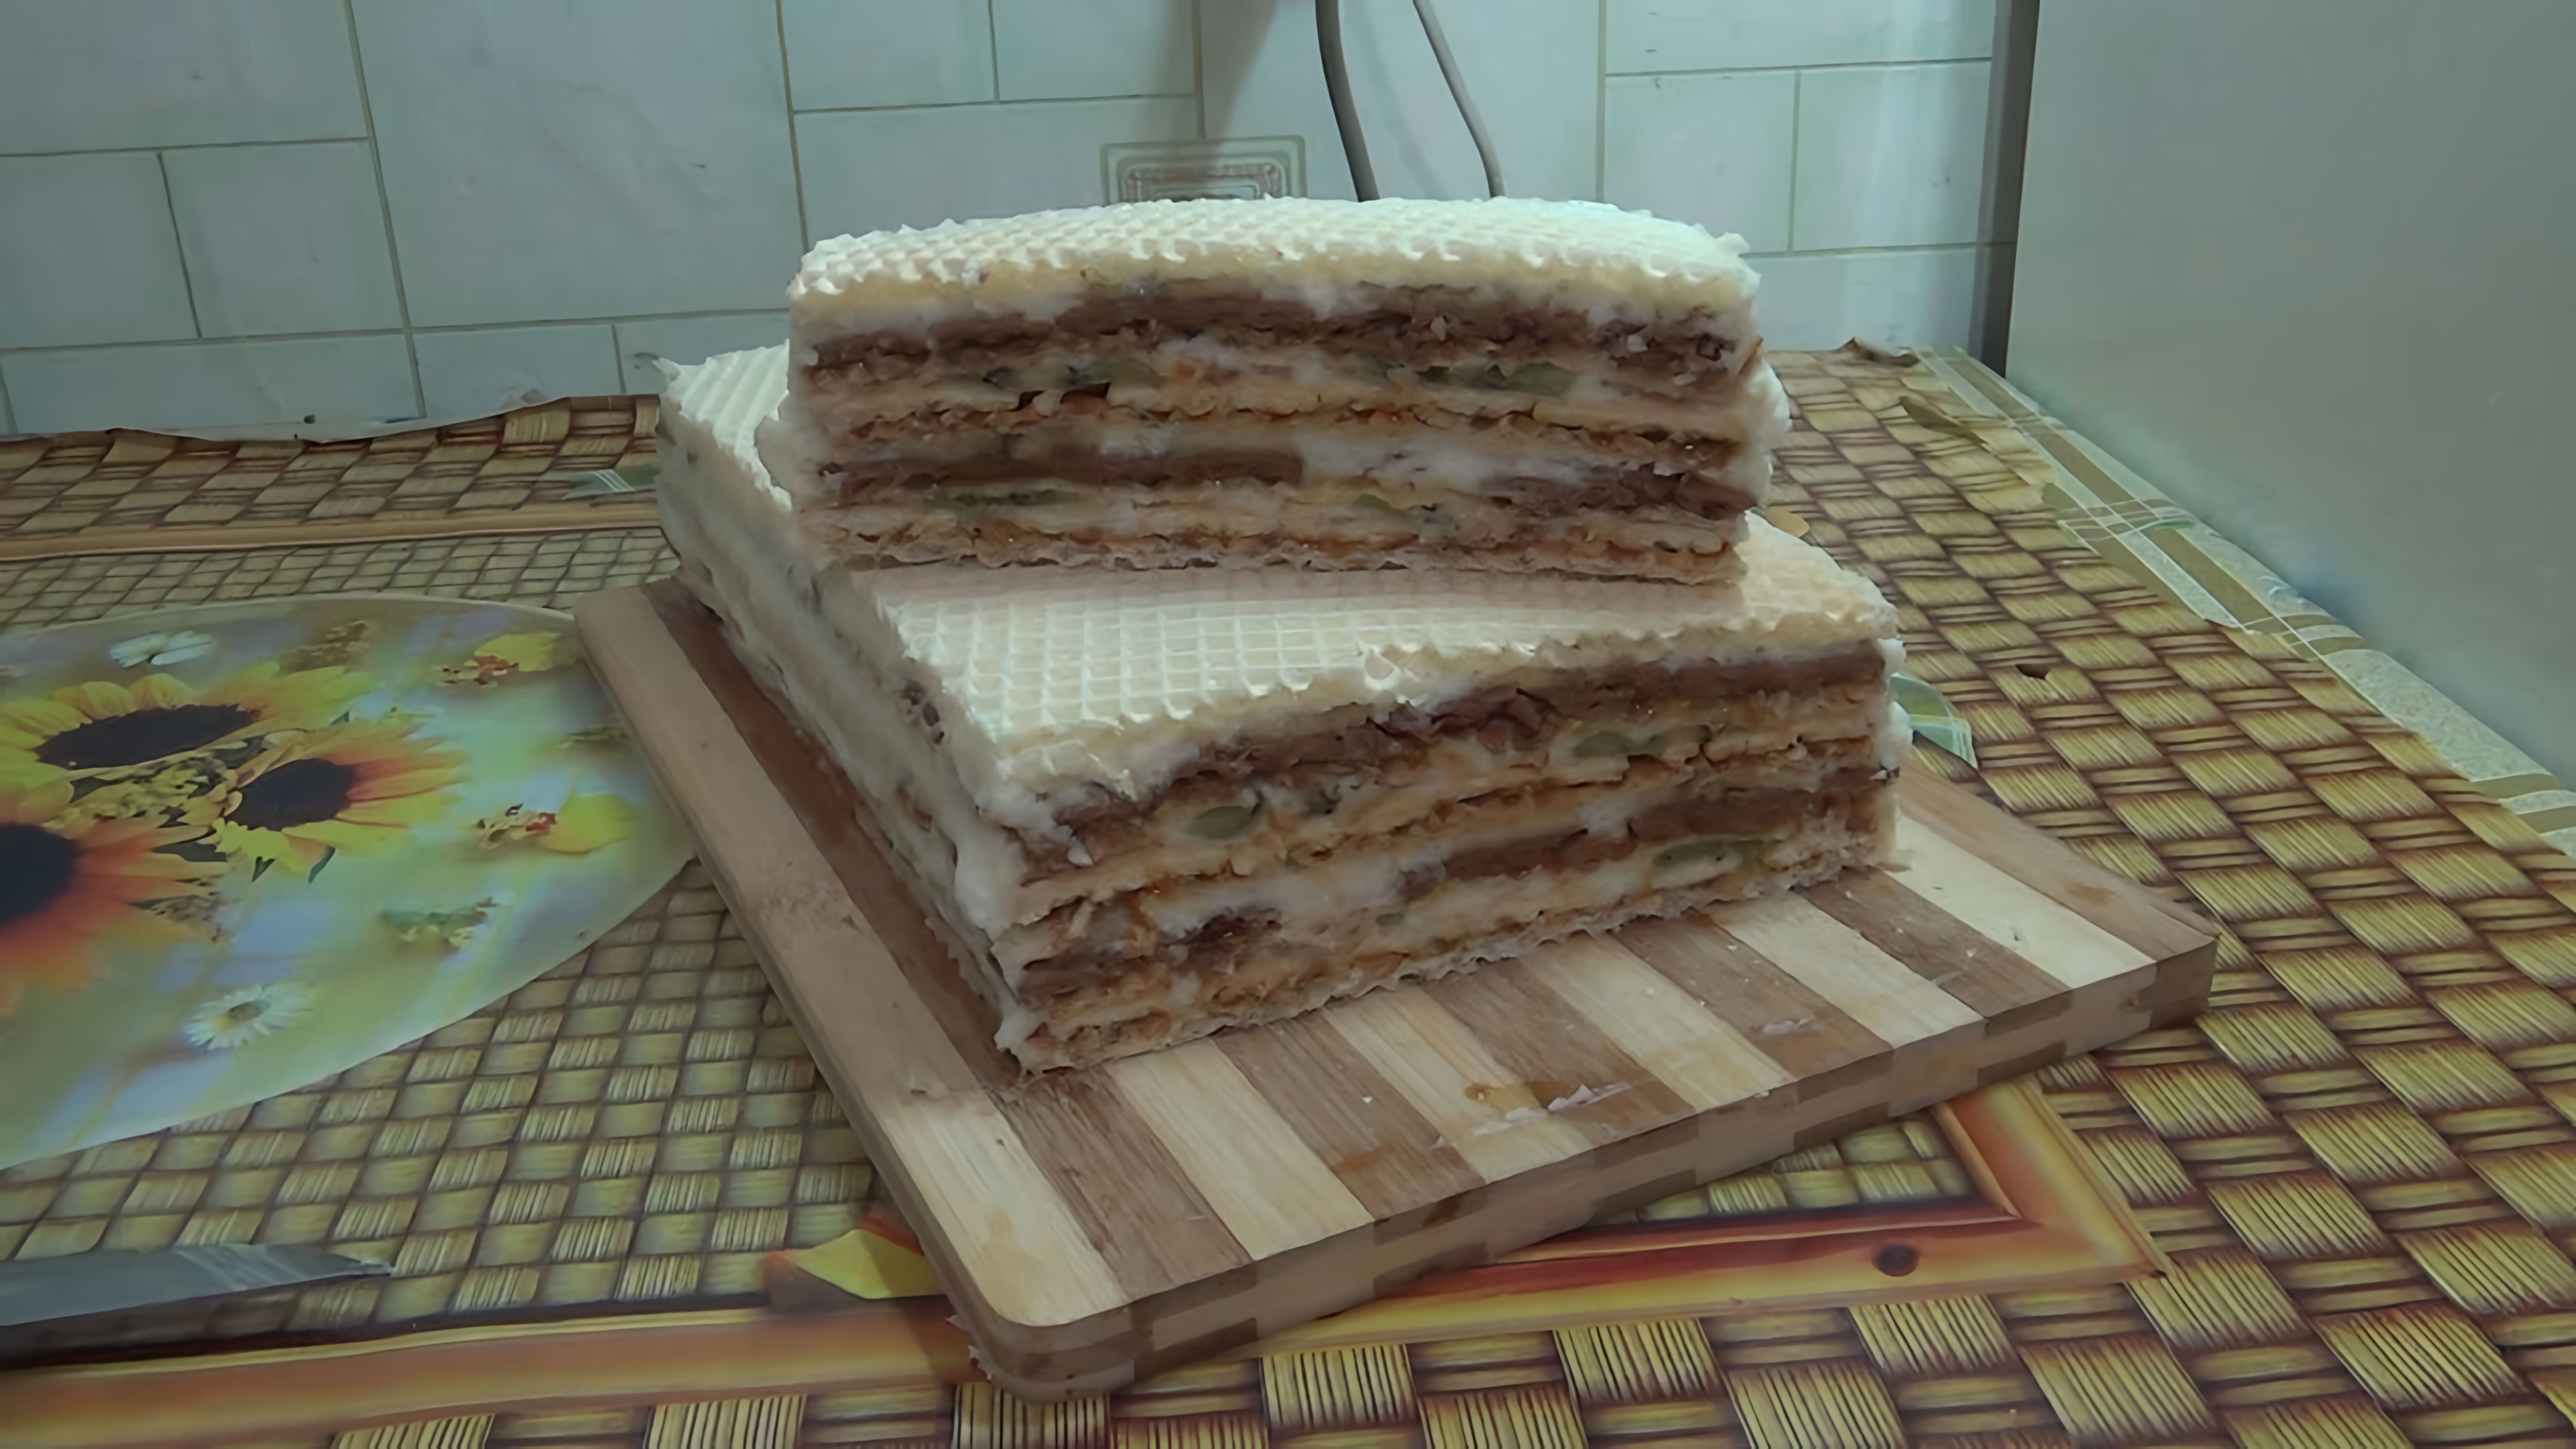 В этом видео демонстрируется рецепт приготовления вафельного торта с бананами и киви без выпечки